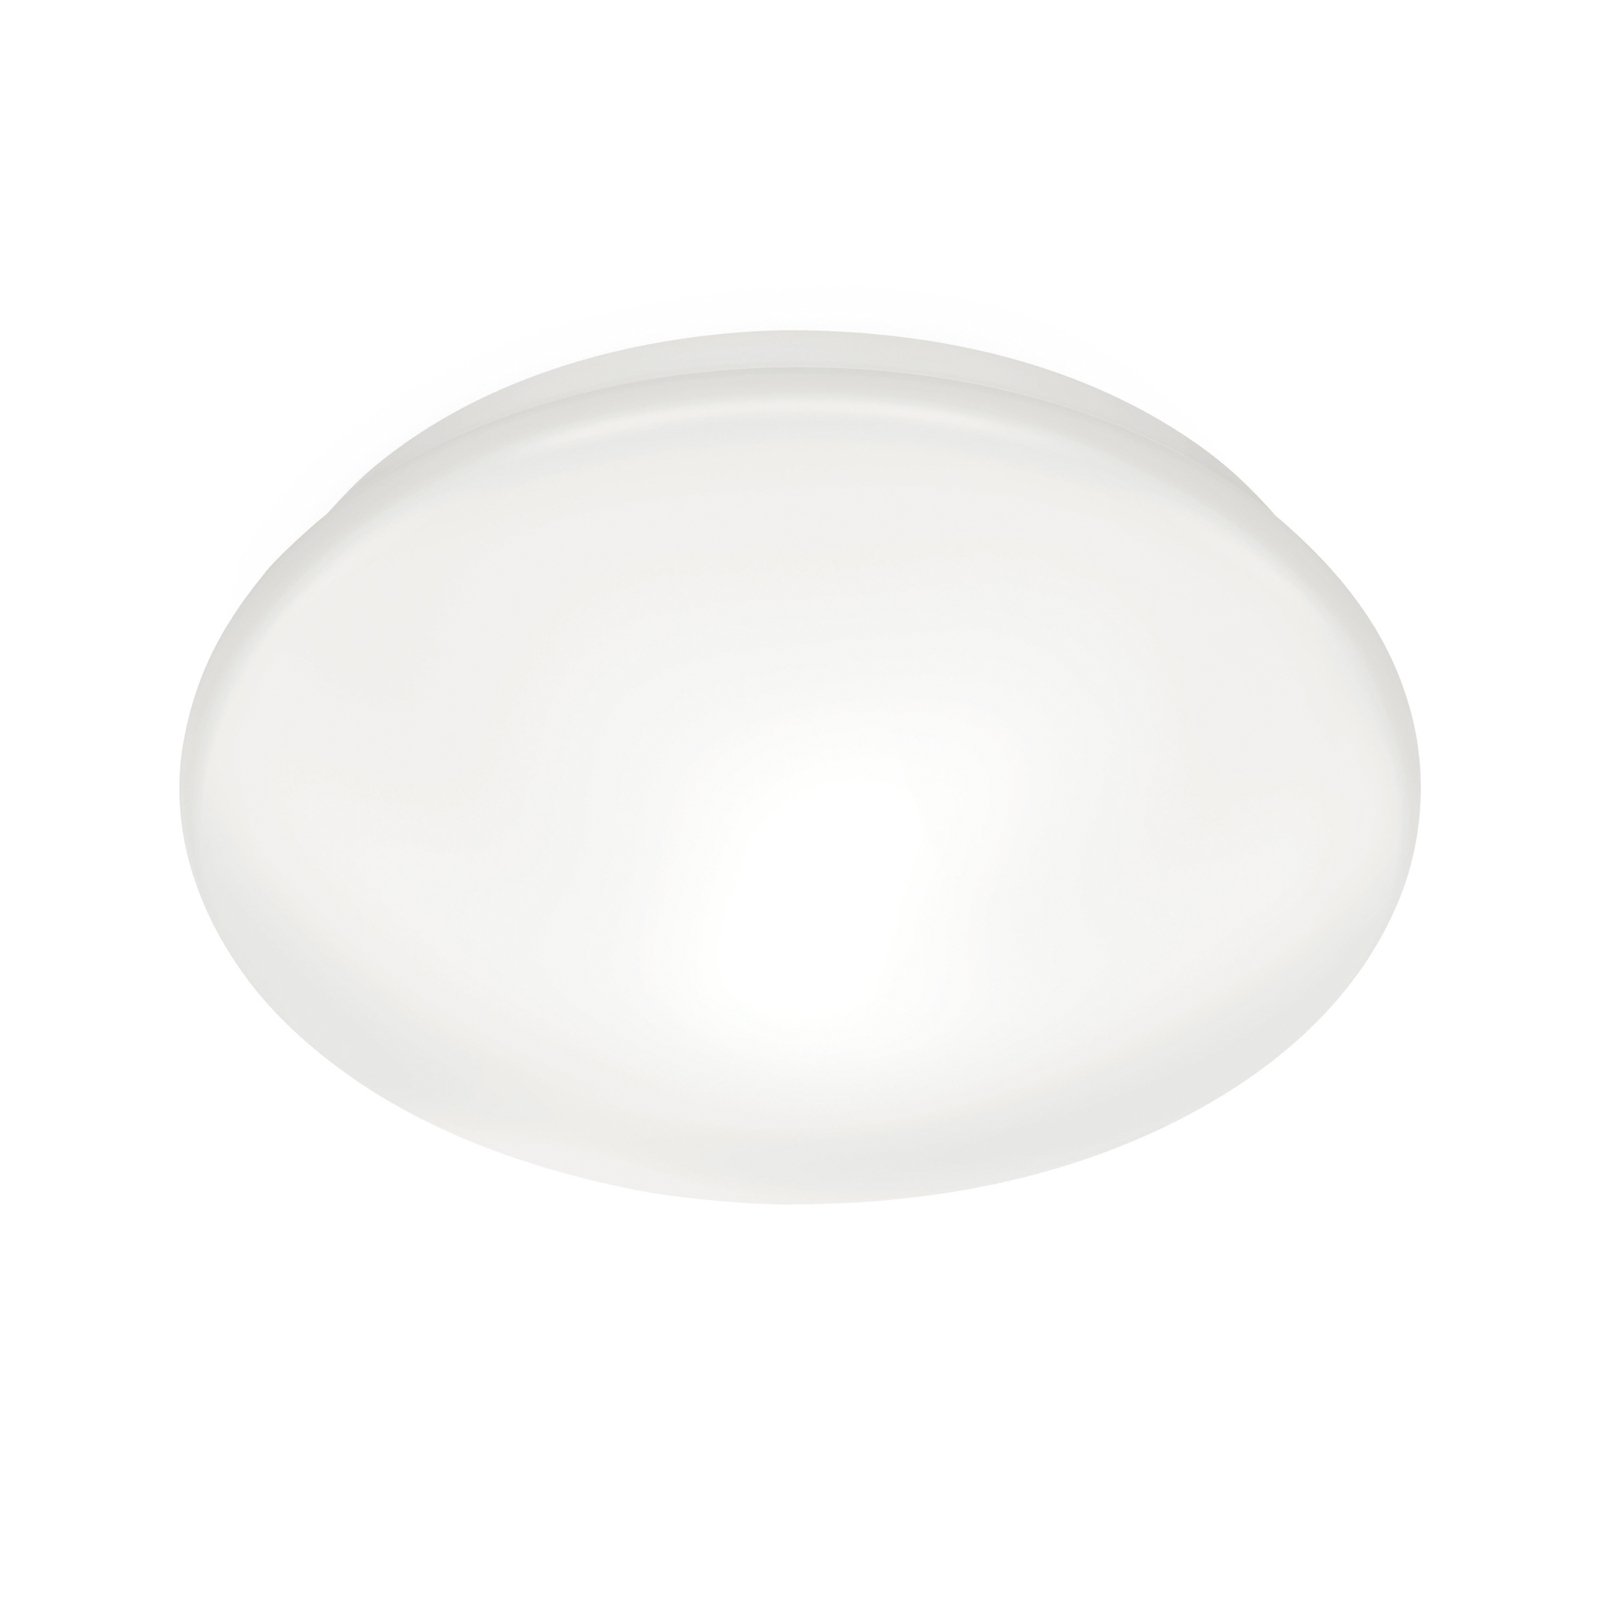 WiZ Adria LED ceiling lamp, 17 W, warm white